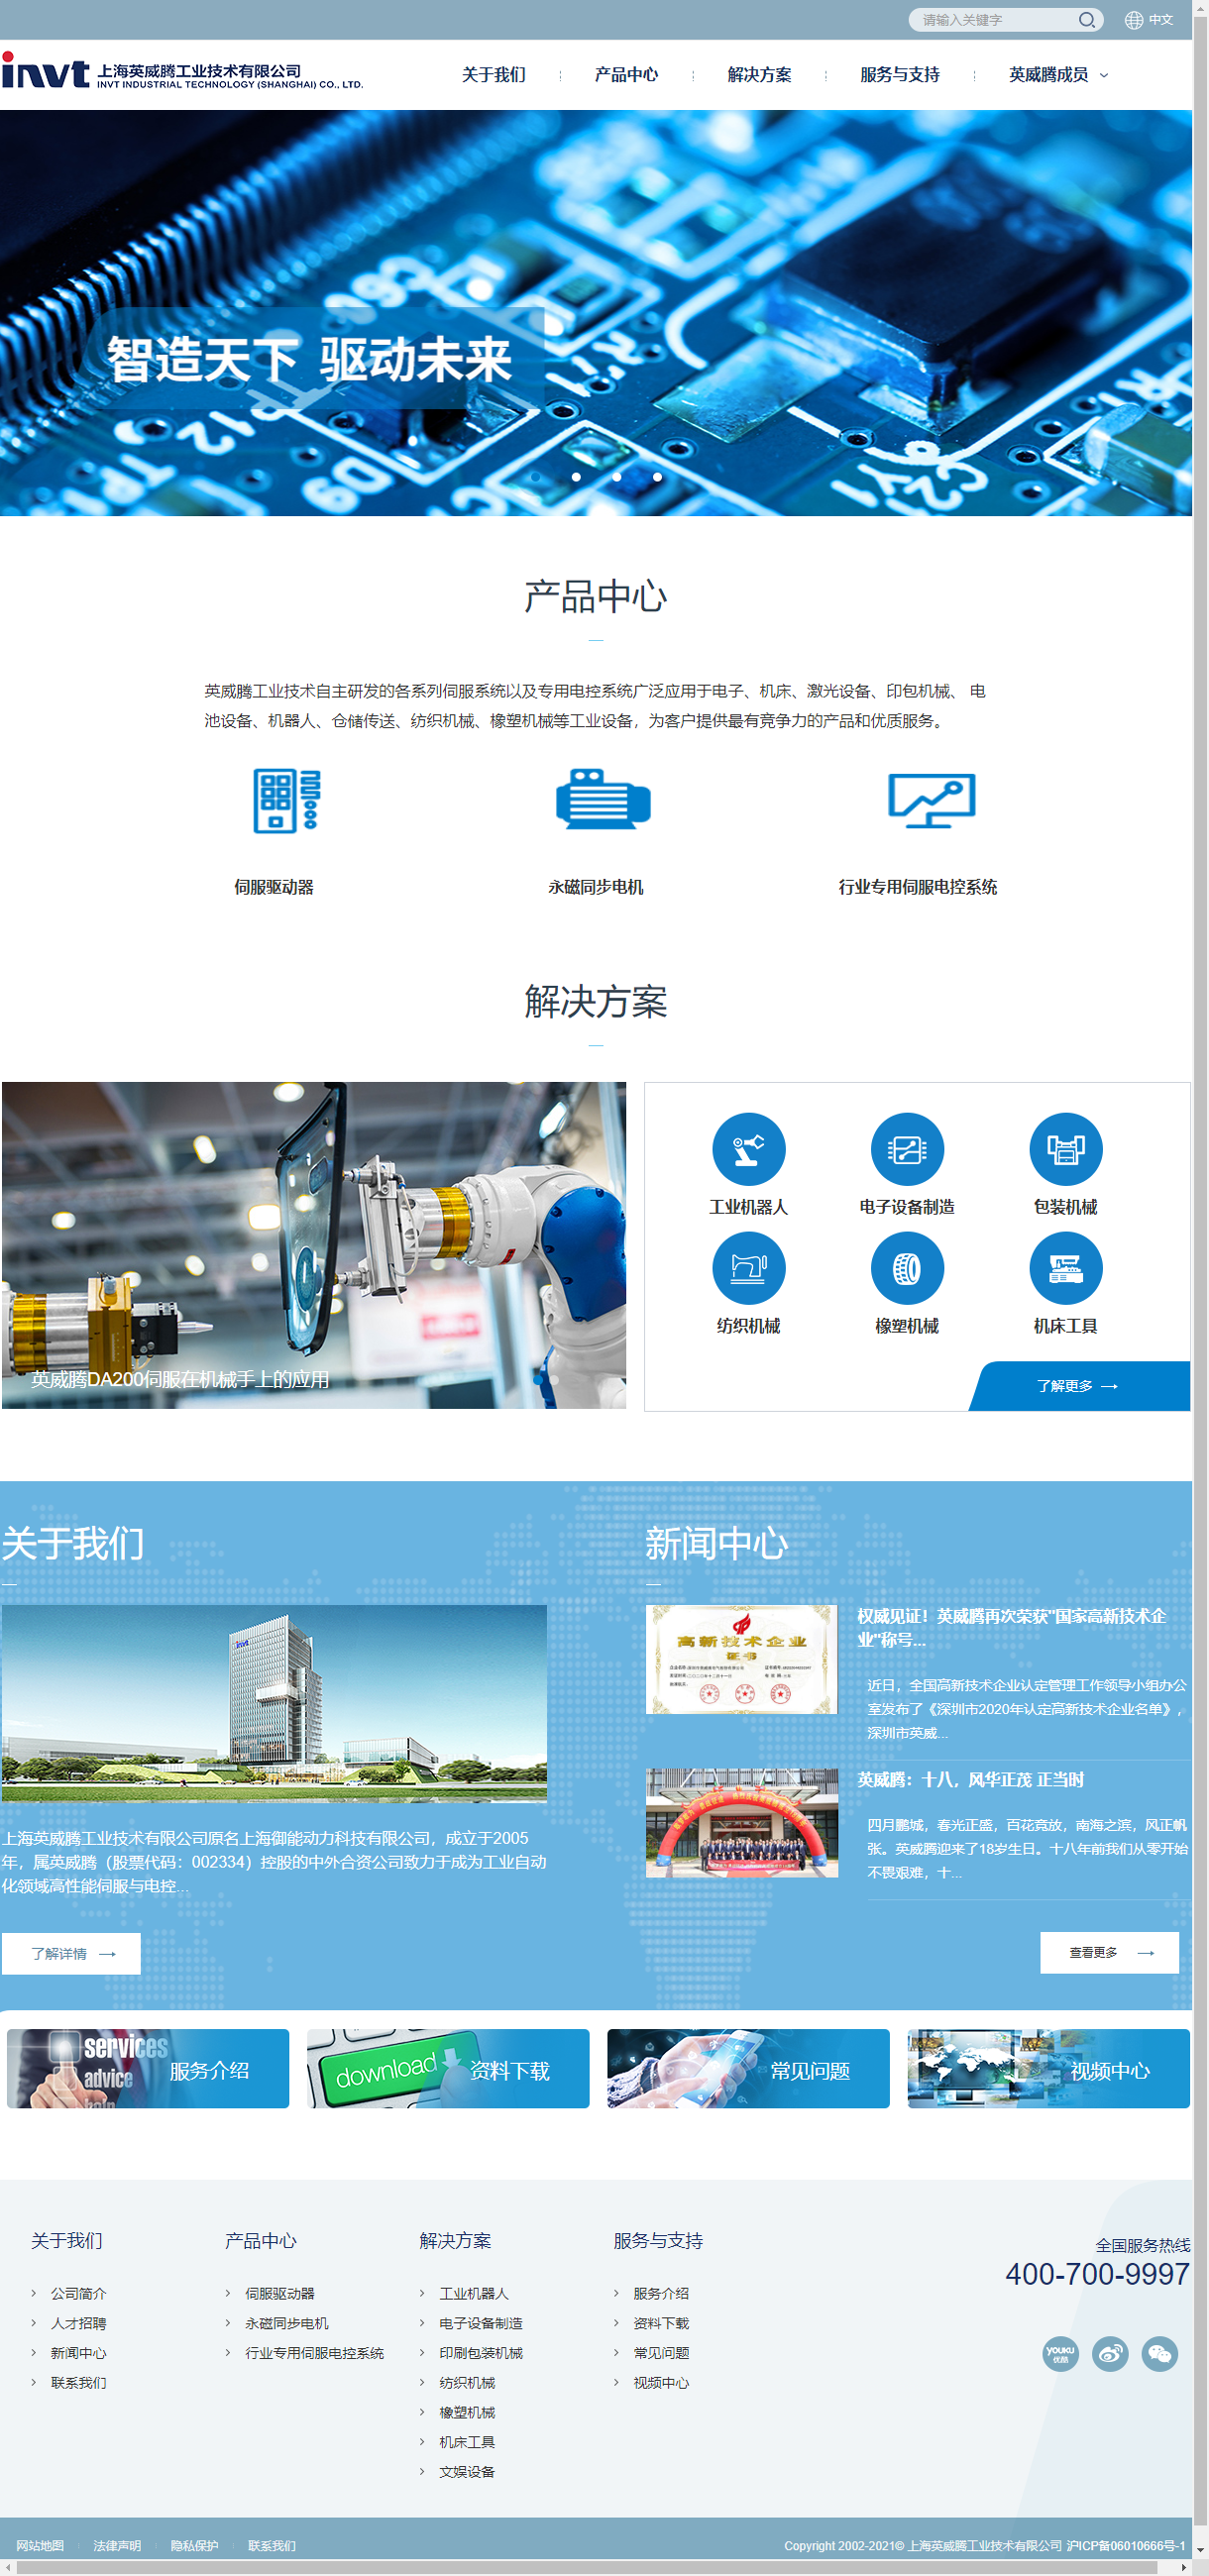 上海英威腾工业技术有限公司网站案例